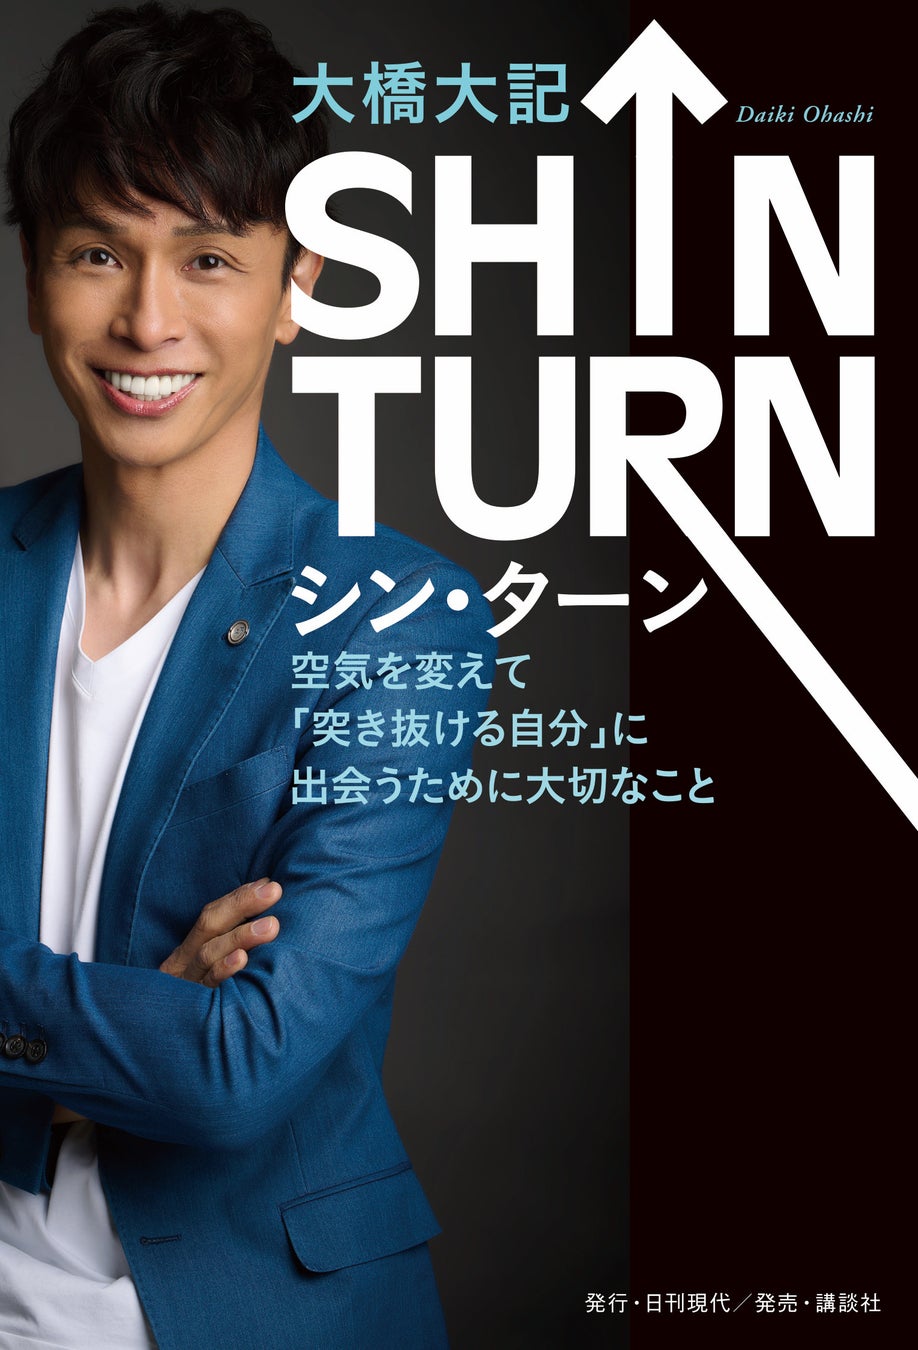 竹中直人氏応援！大橋大記初出版の書籍「SHIN TURN」を発売のサブ画像3